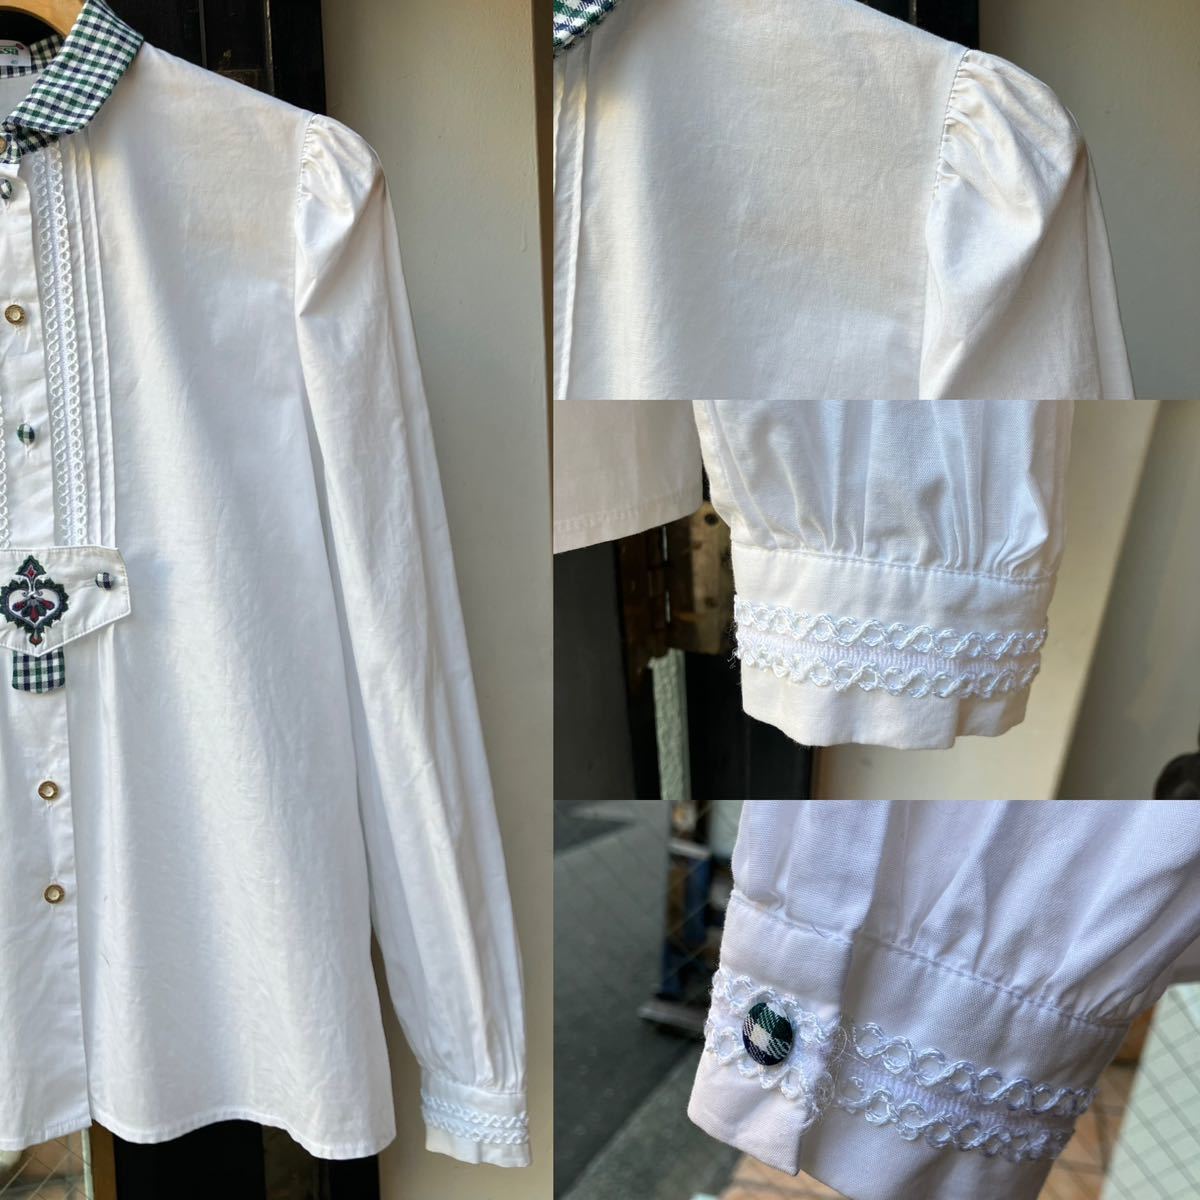 イギリス古着 blouse vintage shirt チロリアンブラウス ブラウス シャツ 長袖 半袖 長袖シャツ 白シャツ LV767_画像8